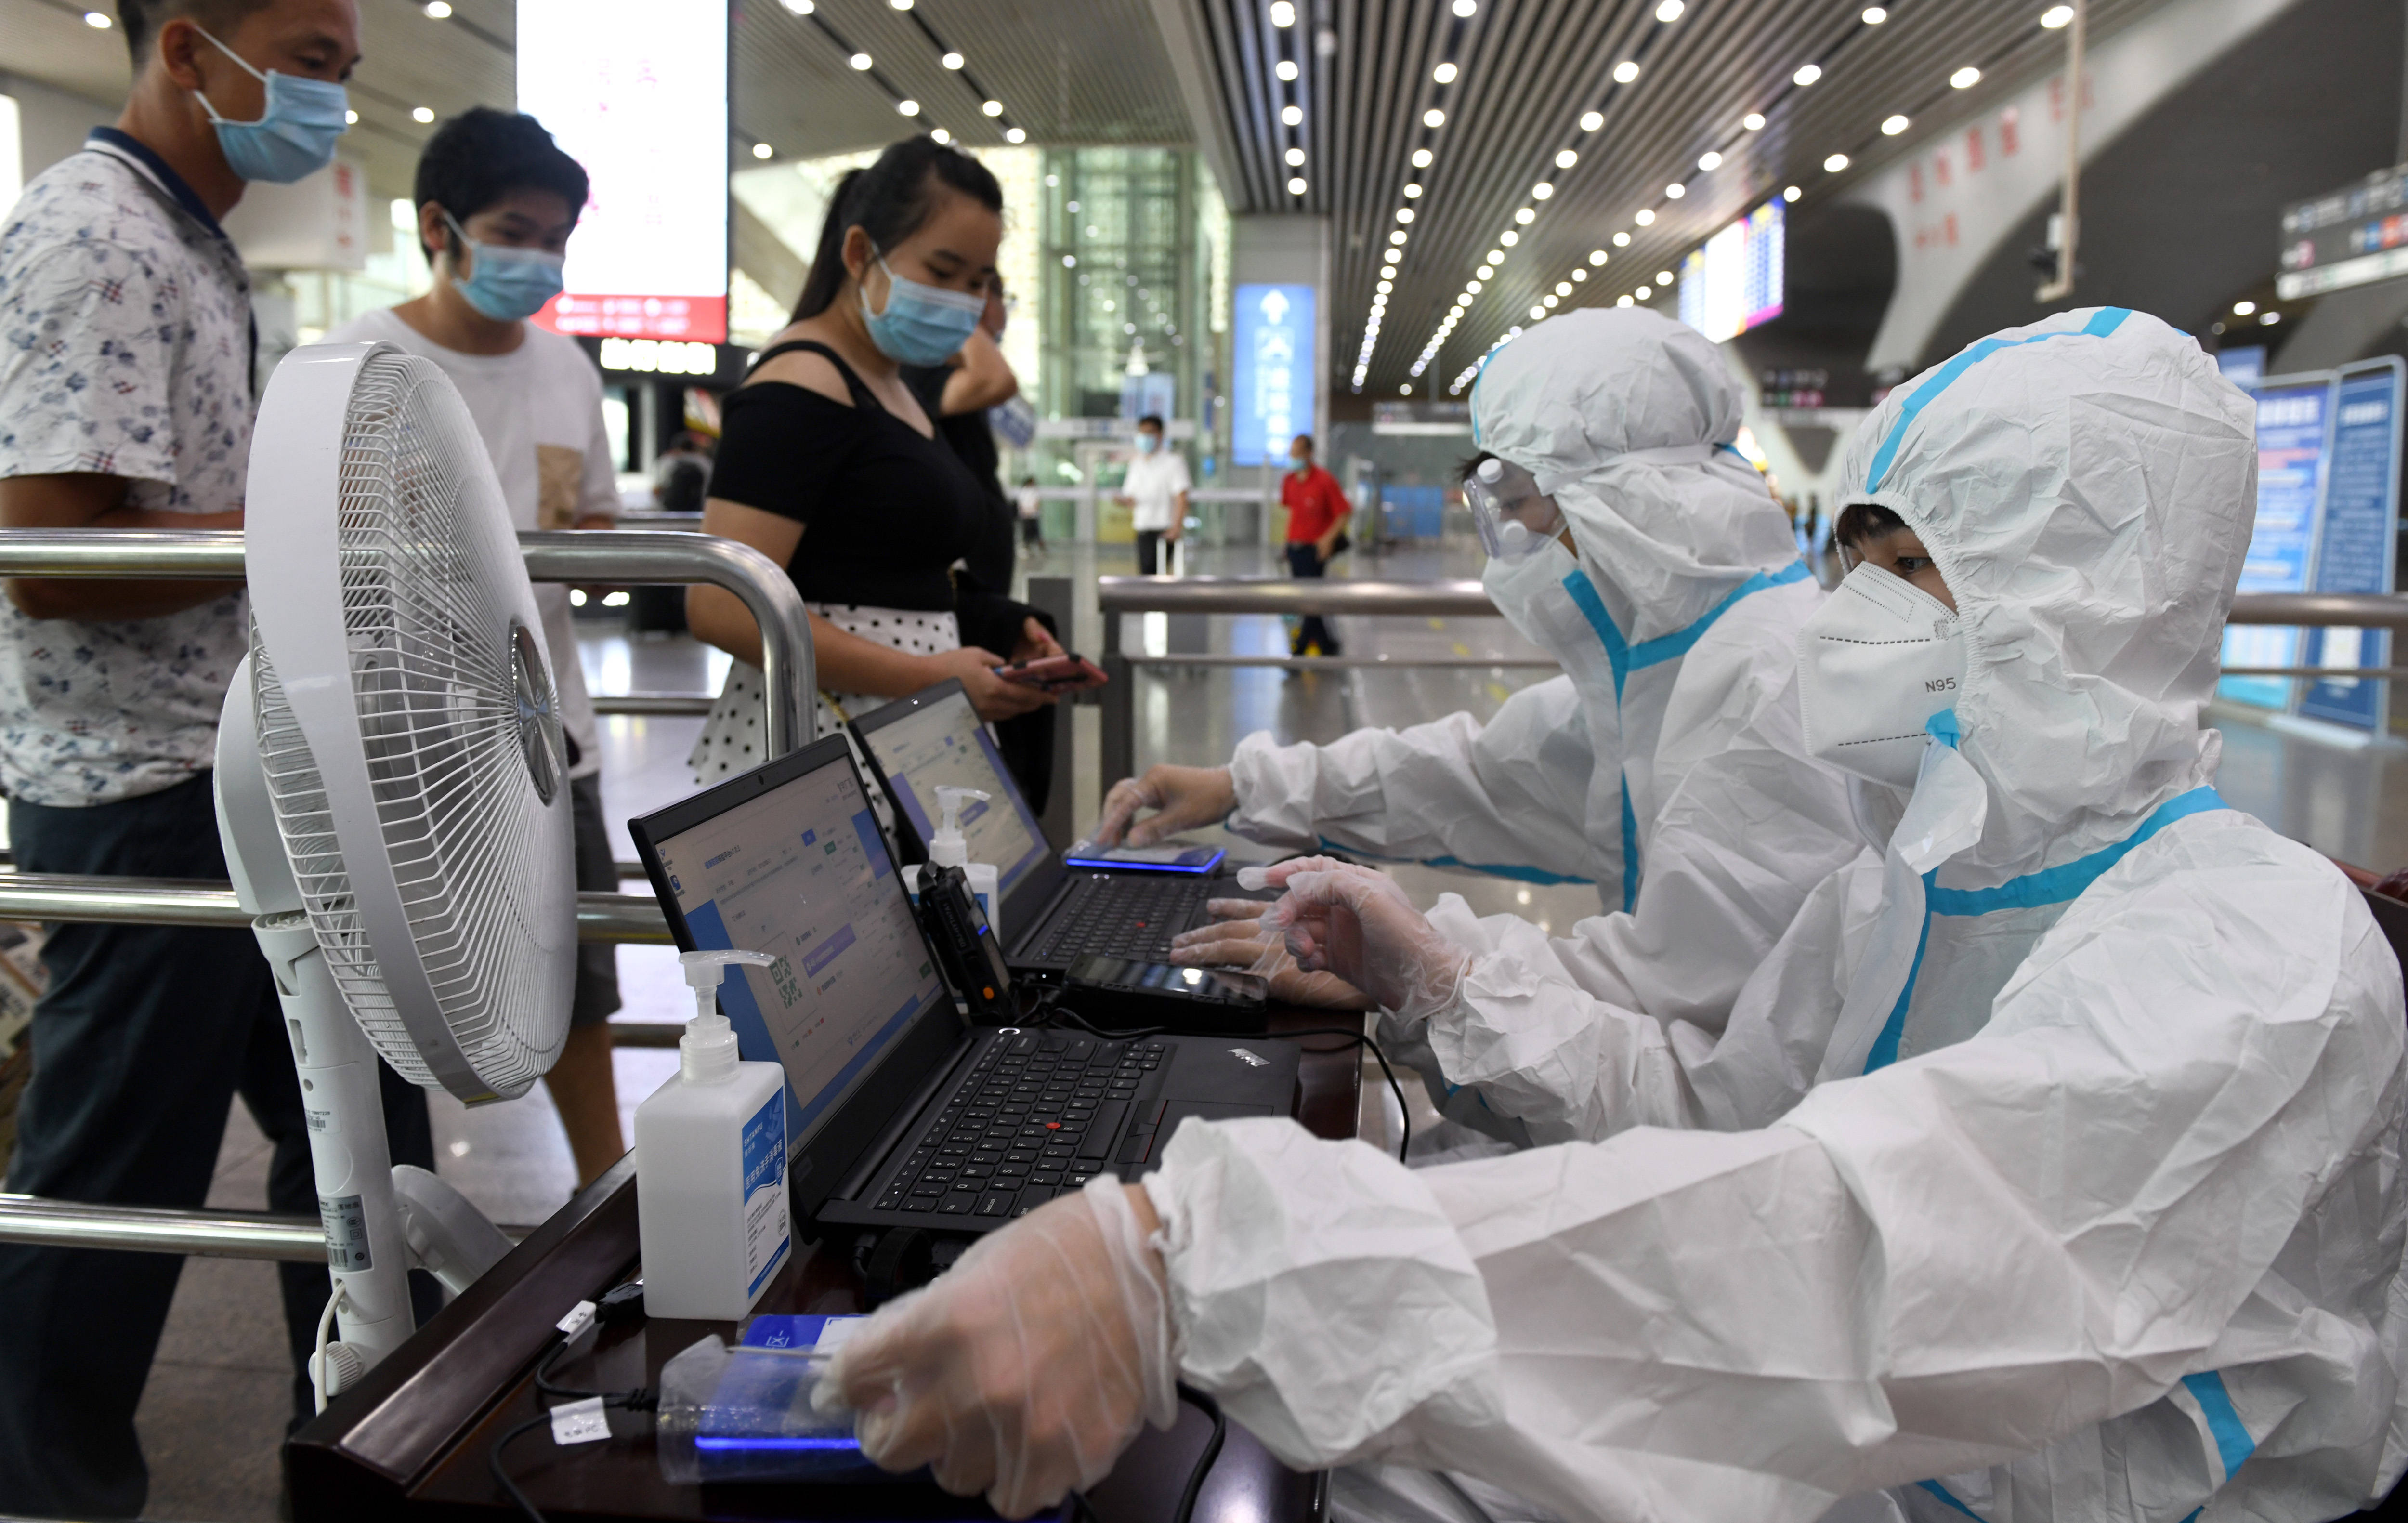 识别|科技助力防疫 广州南站启用5G智能化健康防疫核验系统